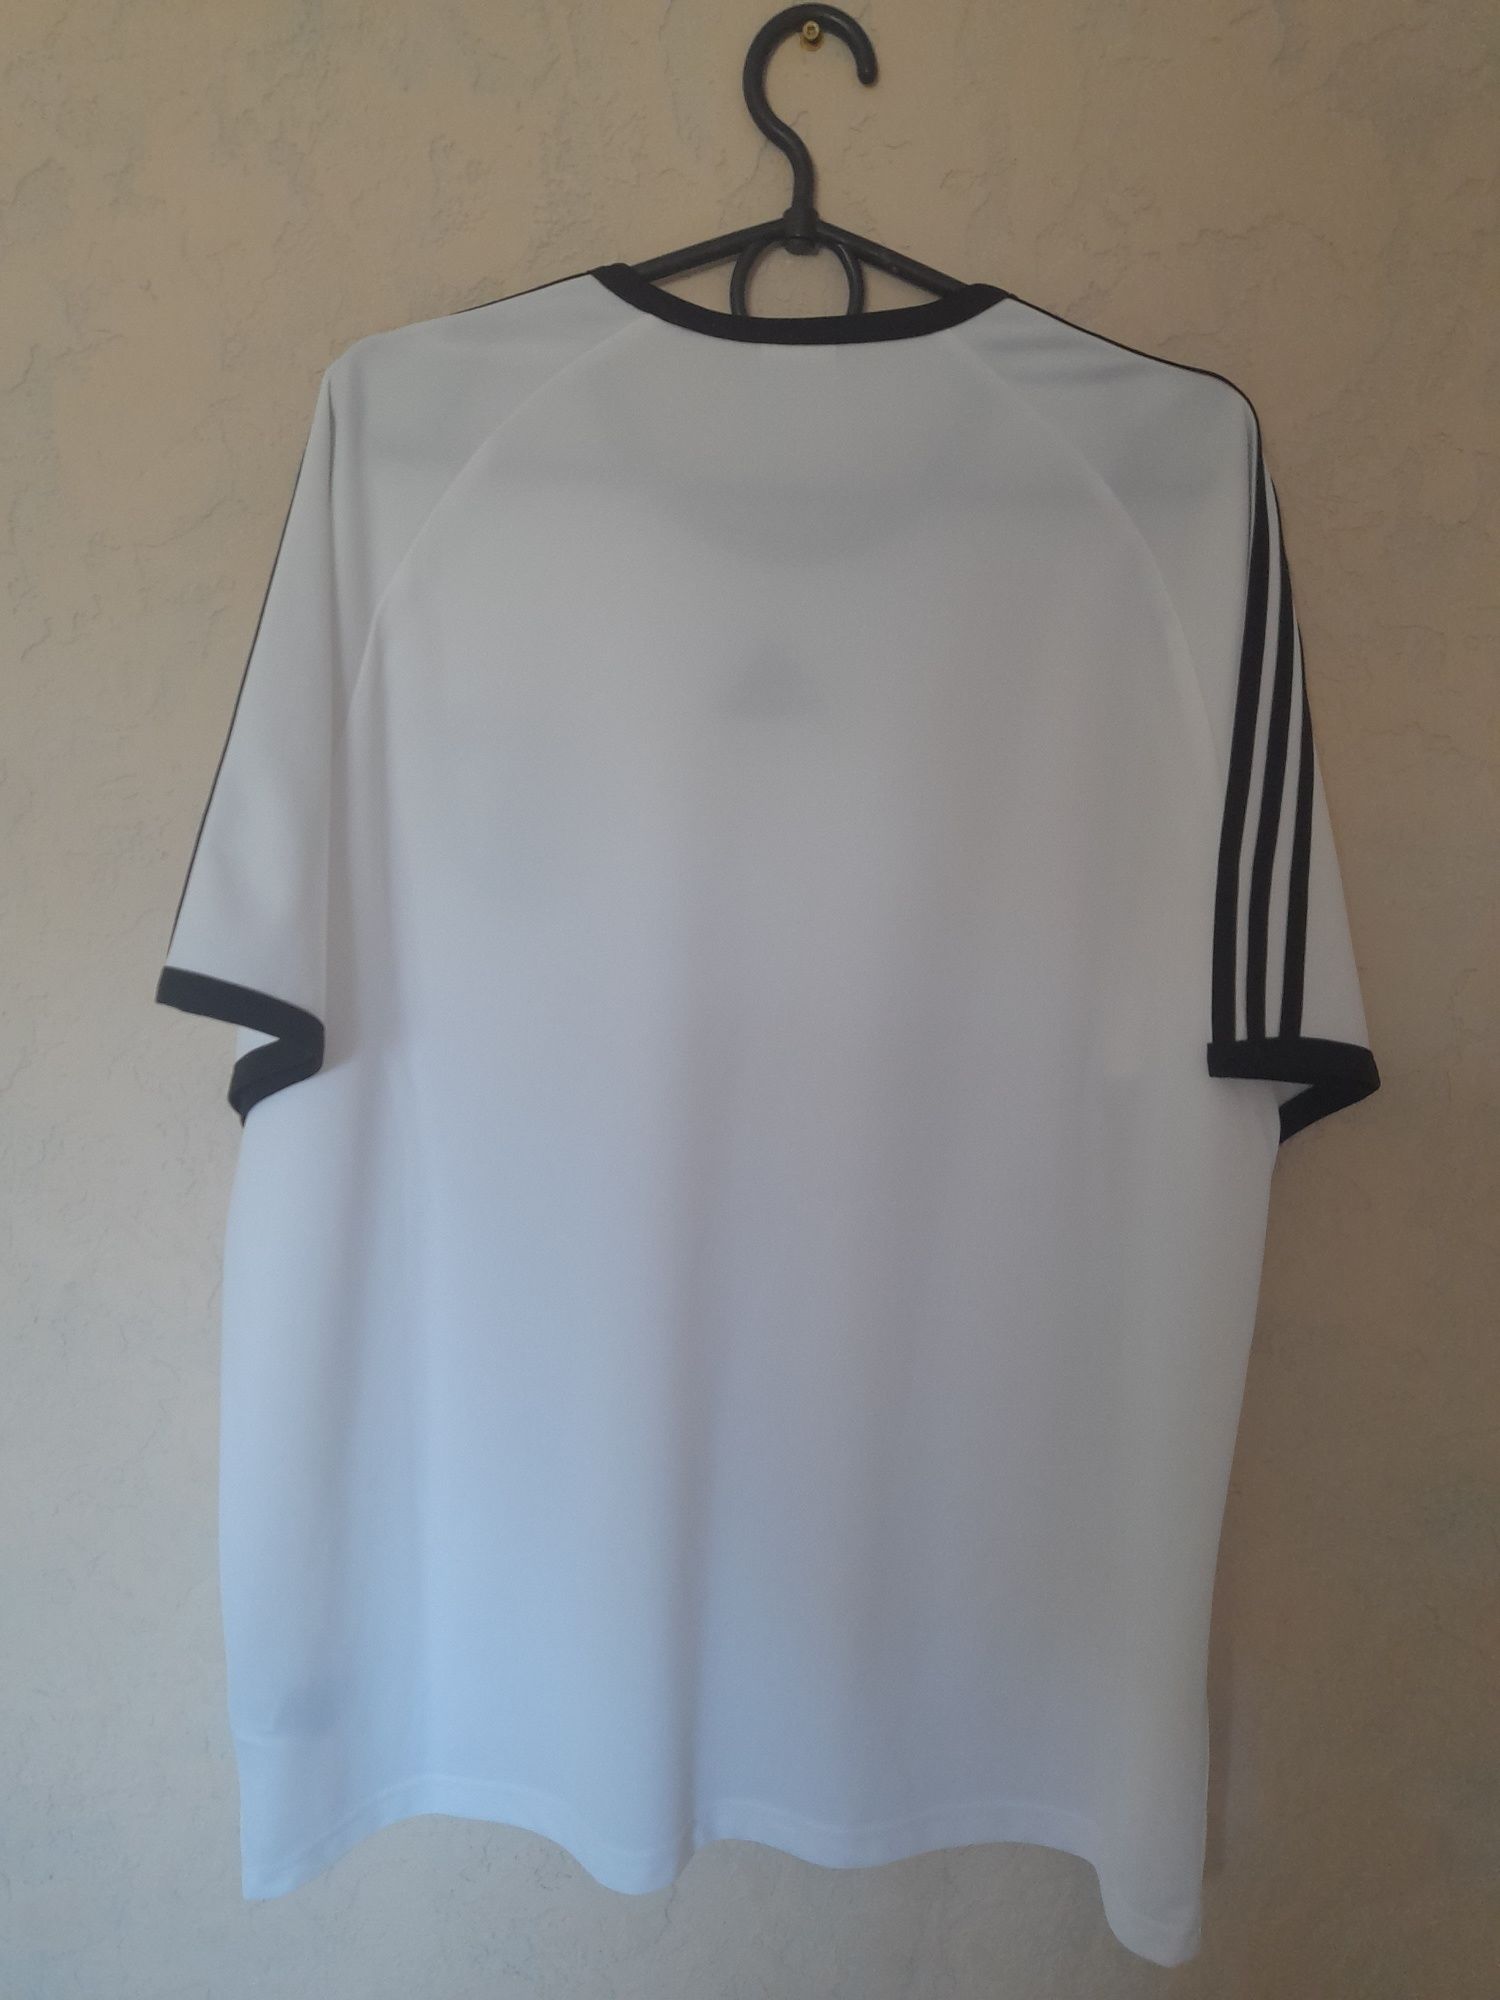 Оригинал Adidas футбольная джерси Германия 2010- 2011  идеал, XL, 2XL